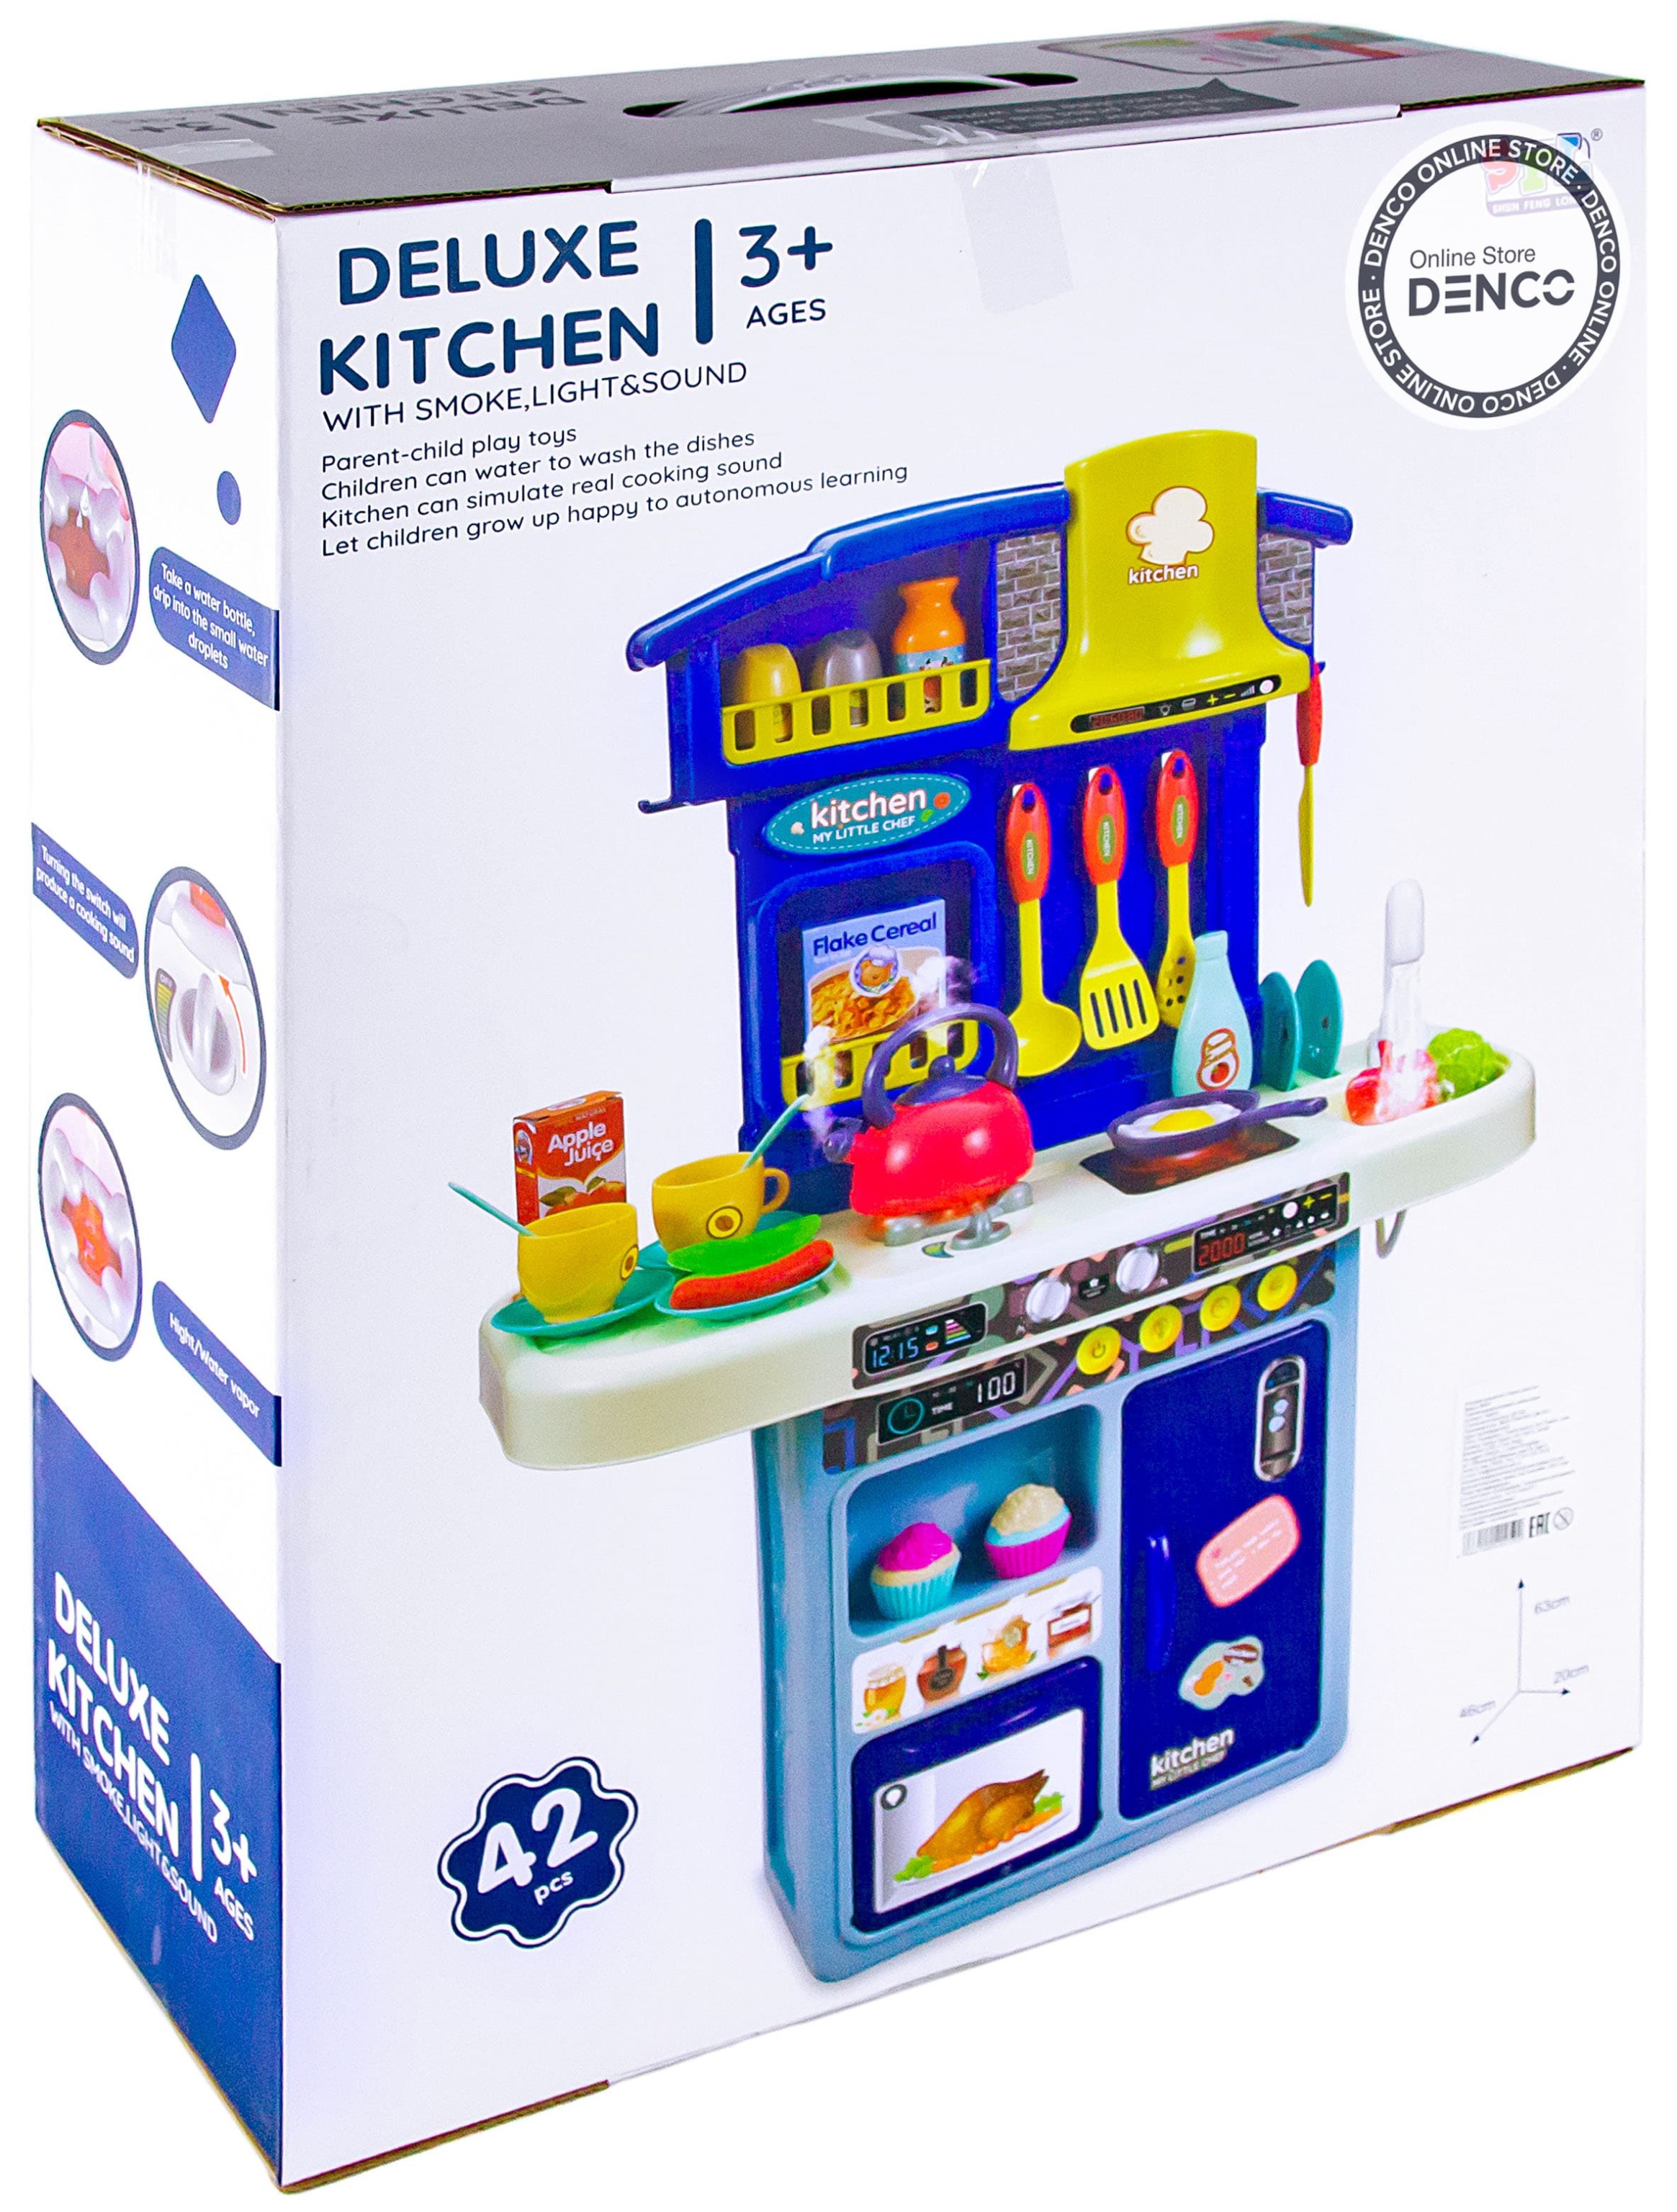 Детская интерактивная кухня DELUXE 63 см, 42 предмета 16863B / вода, пар, свет